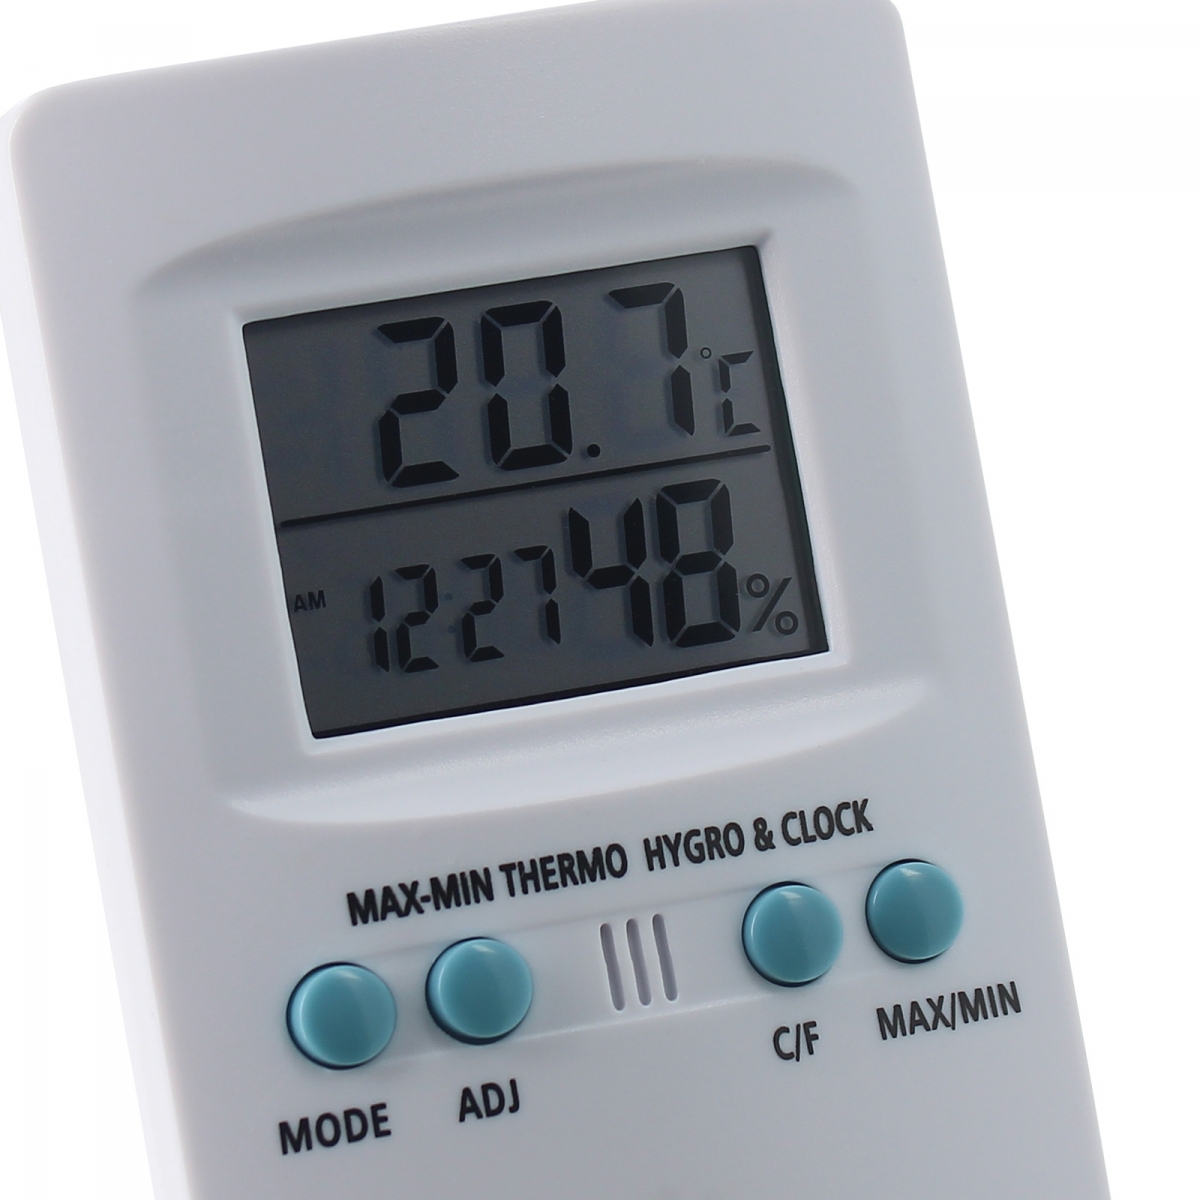 Thermomètre hygromètre numérique TH907